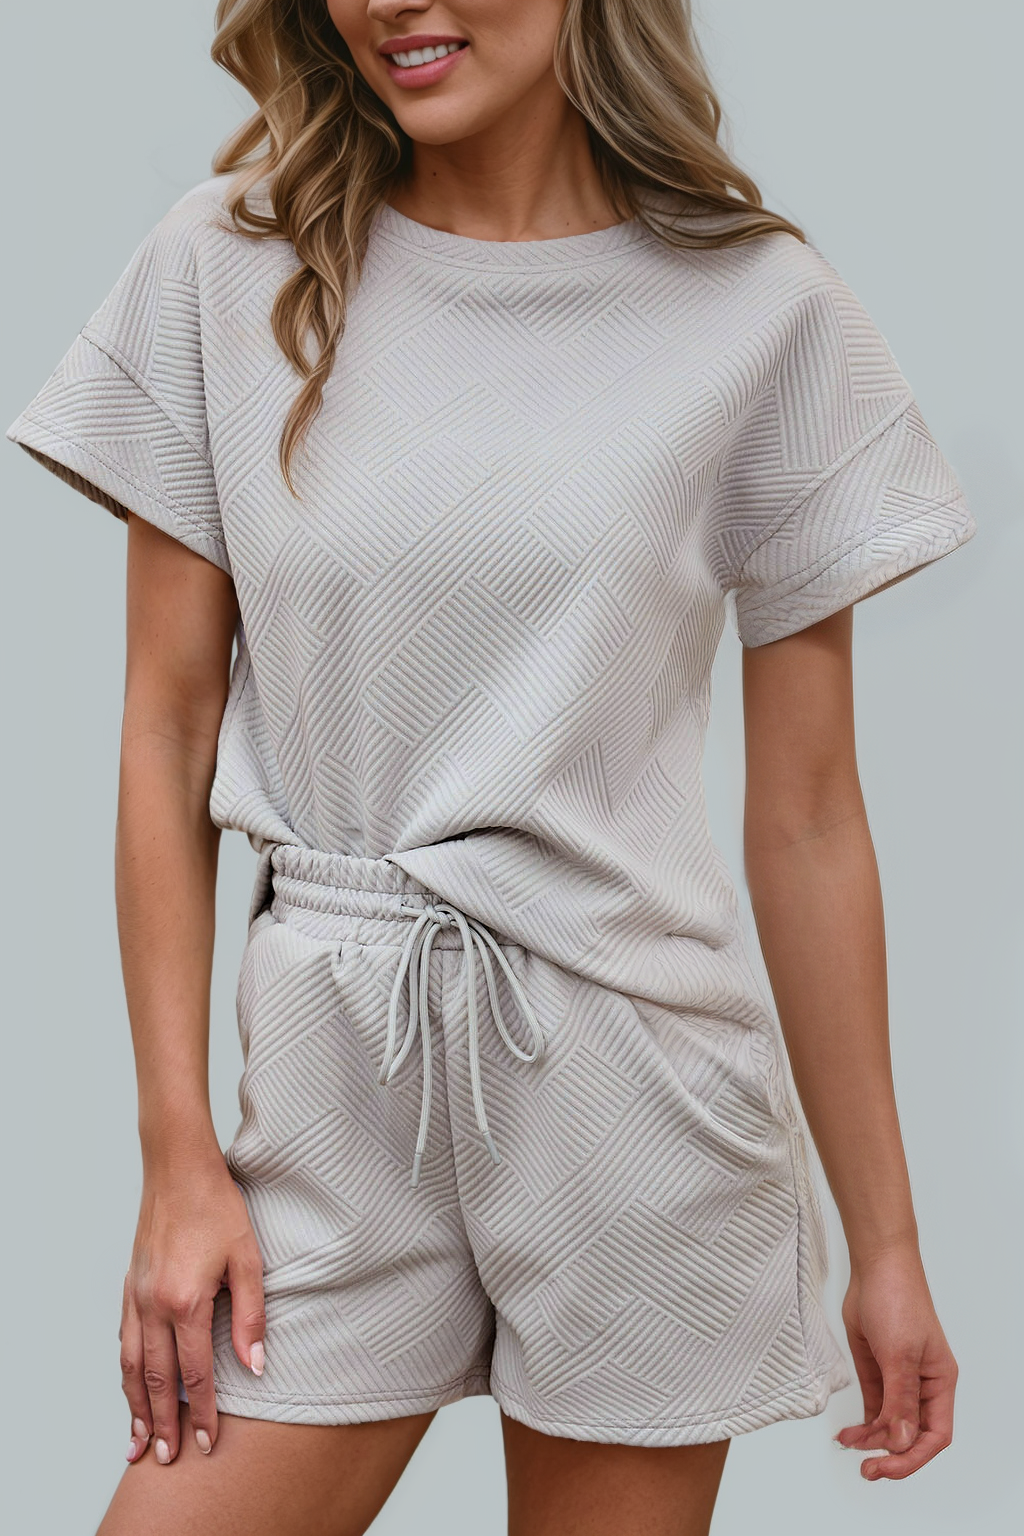 Solid Textured Drawstring Shorts Set |Gray